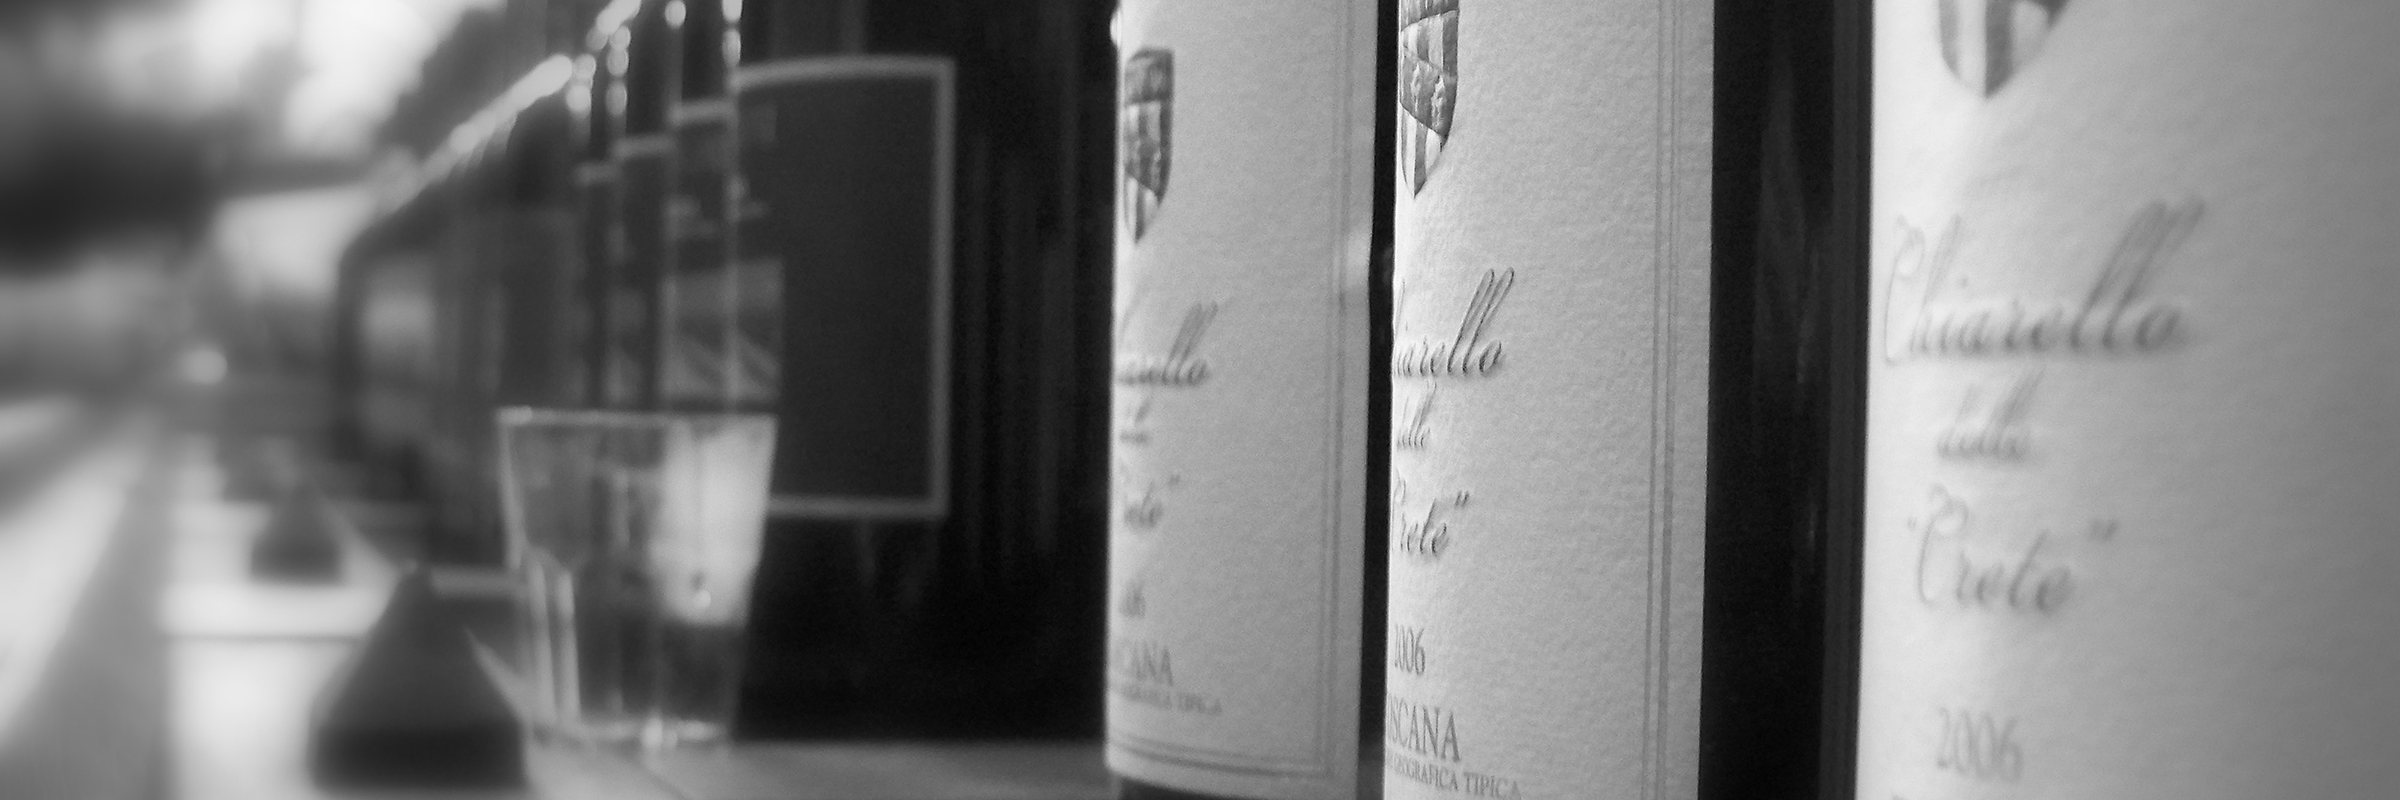 tuscany-wine-photography-slider